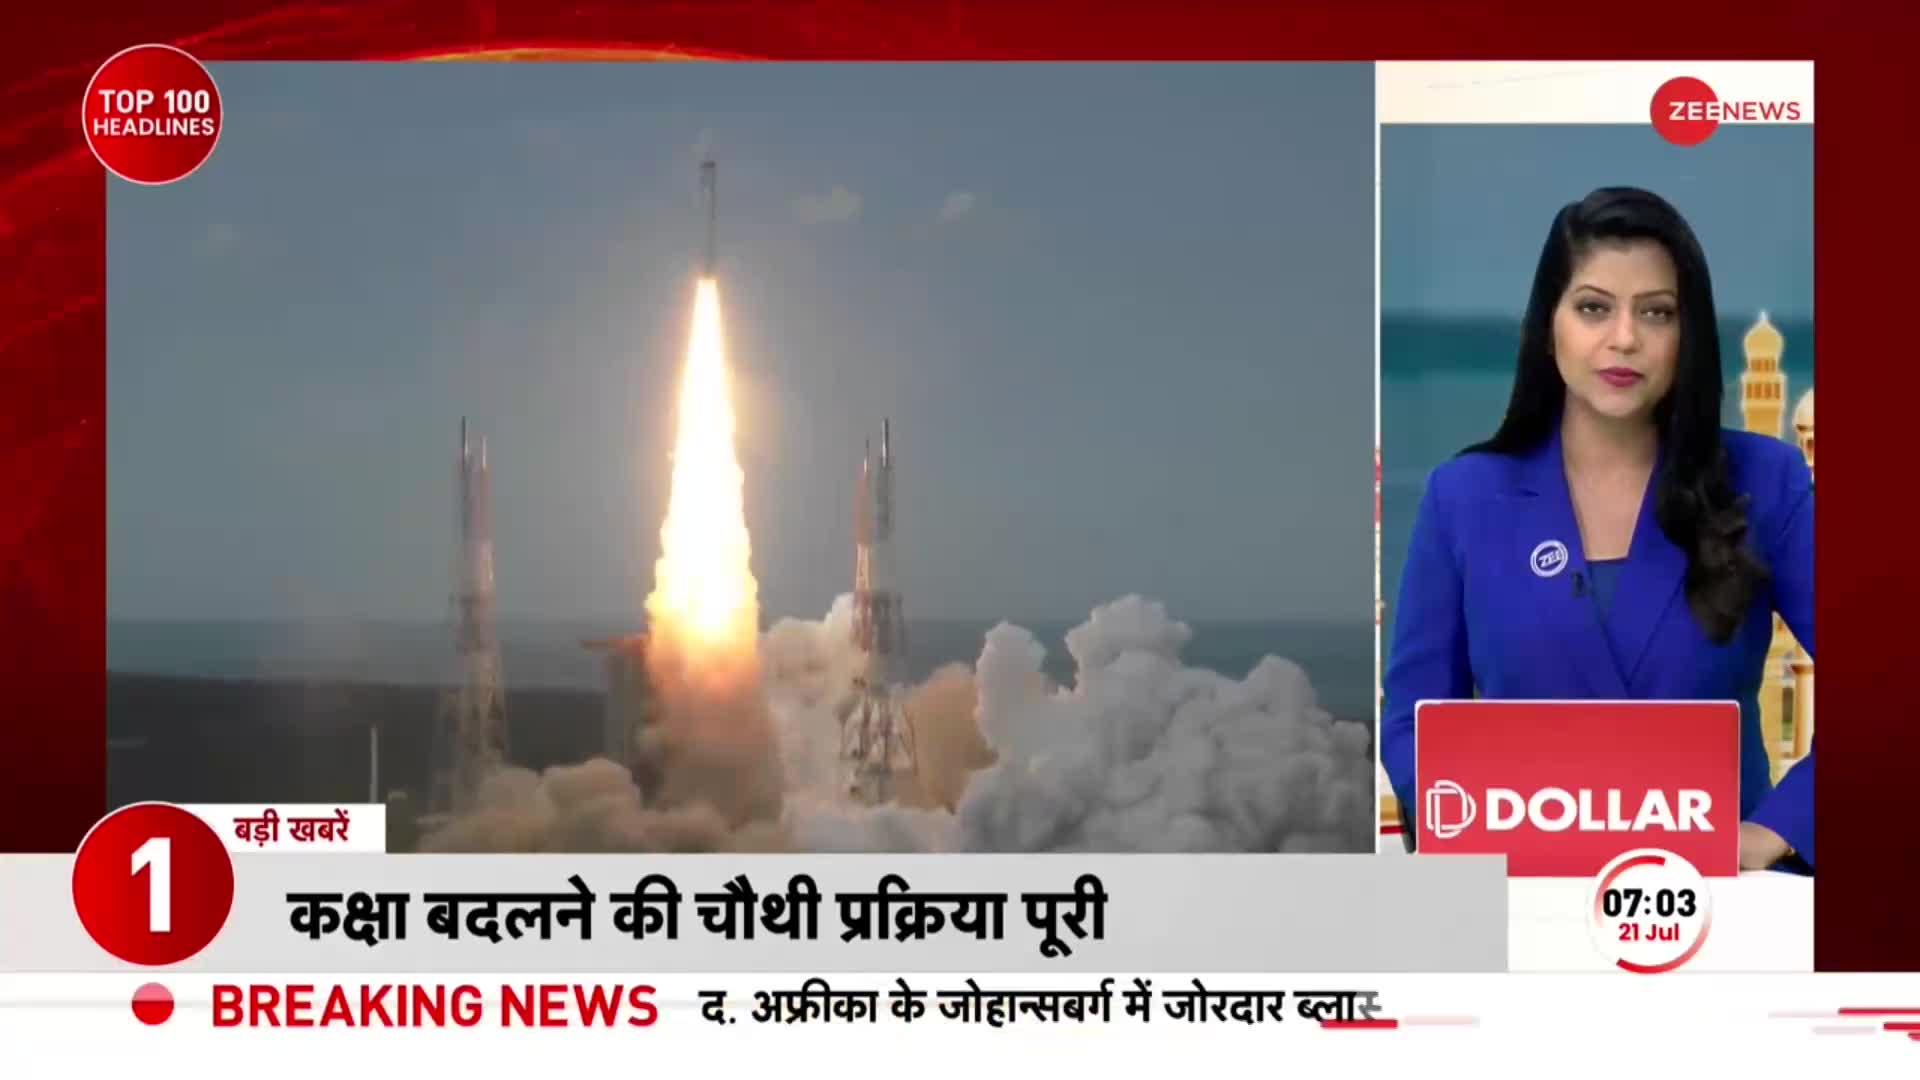 Chandrayaan-3 News: जानिए कहां तक पहुंचा चंद्रयान? 25 जुलाई को फिर ऑर्बिट बदलेगा चंद्रयान 3